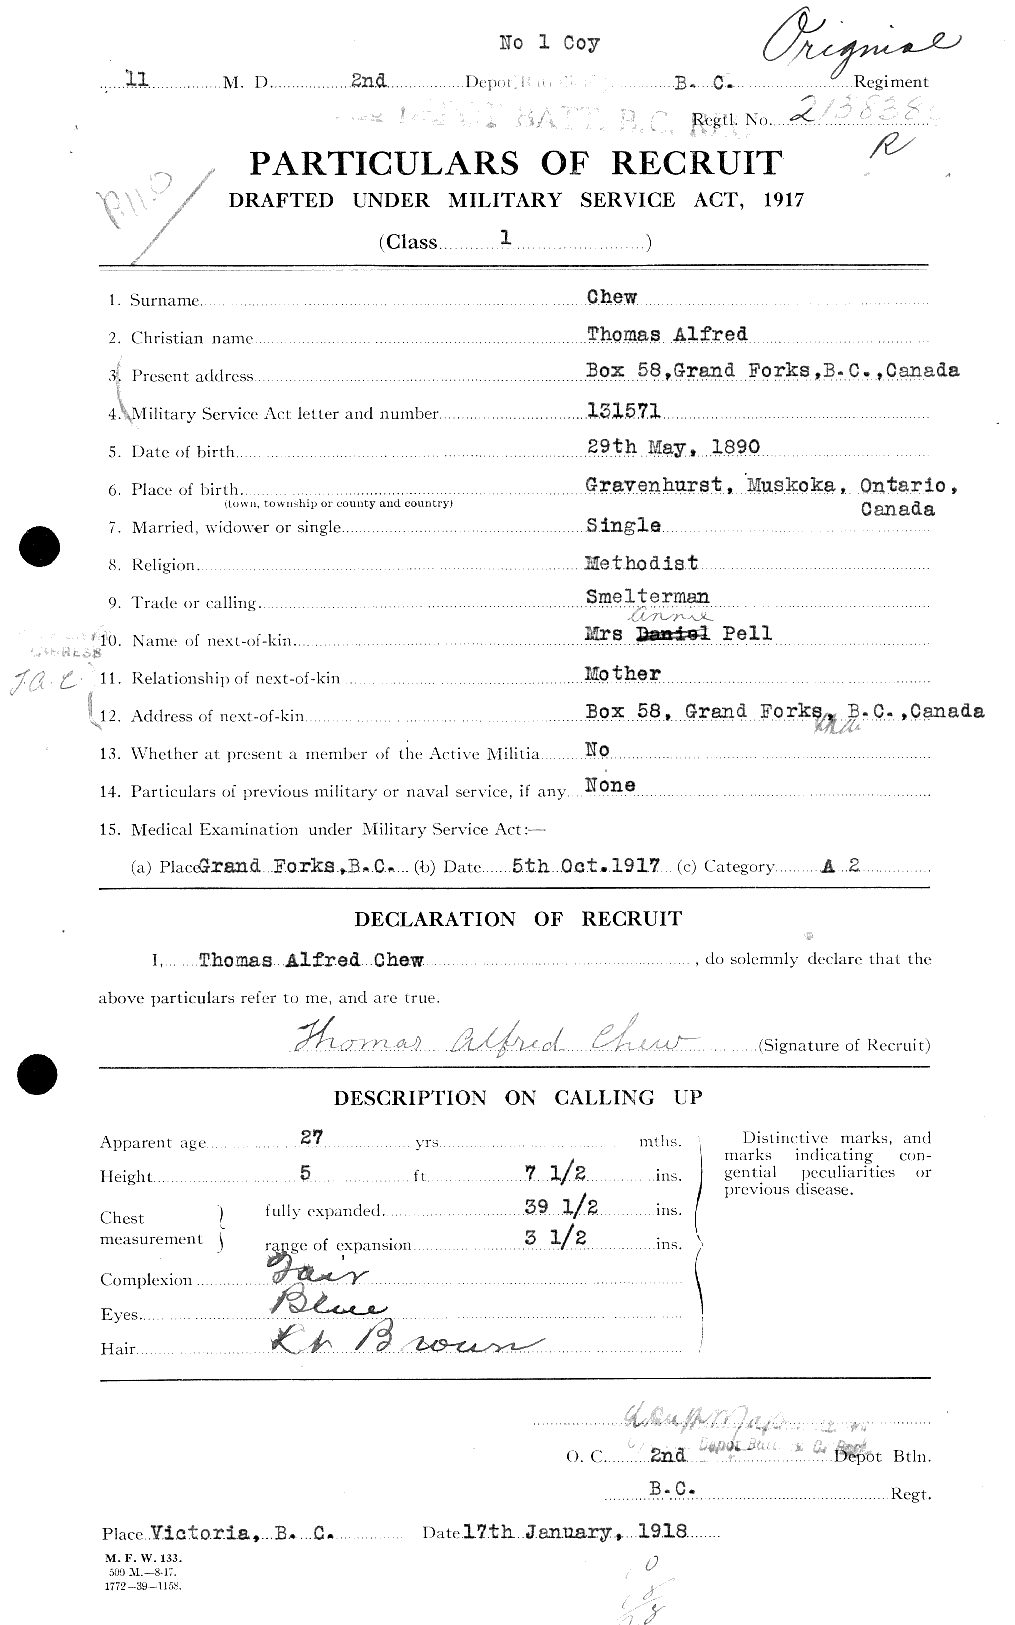 Dossiers du Personnel de la Première Guerre mondiale - CEC 017911a